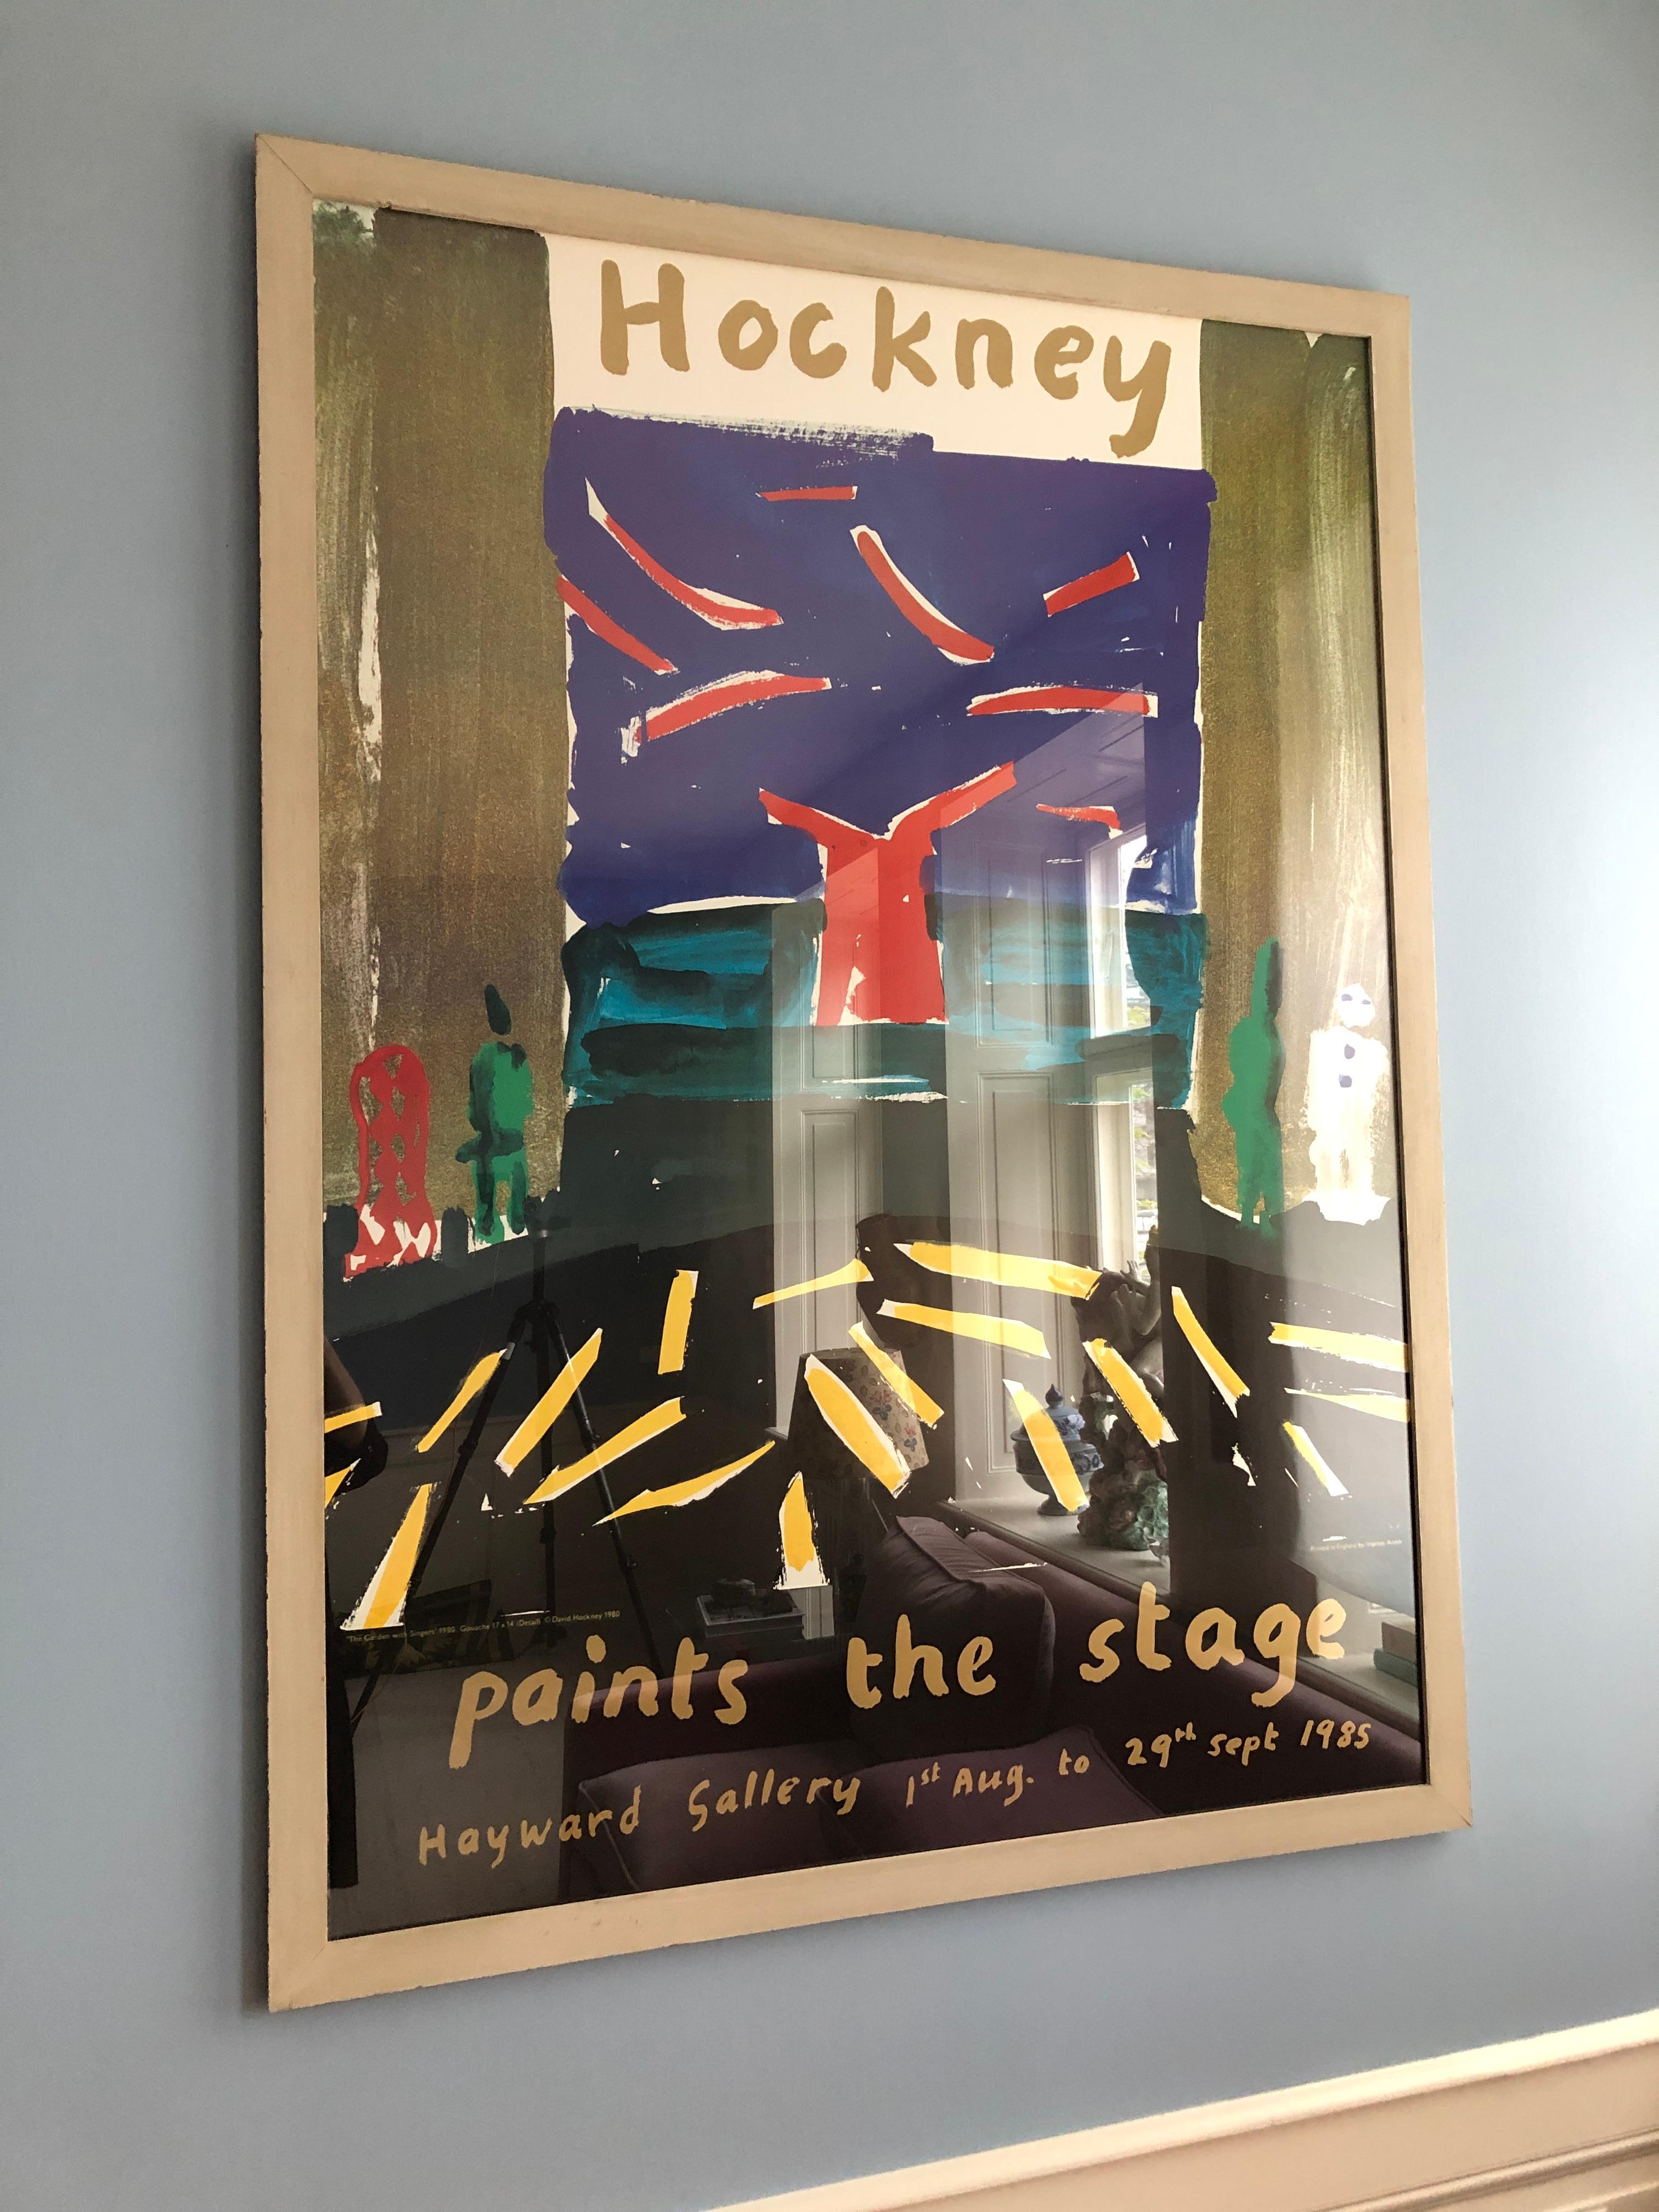 david hockney exhibition posters